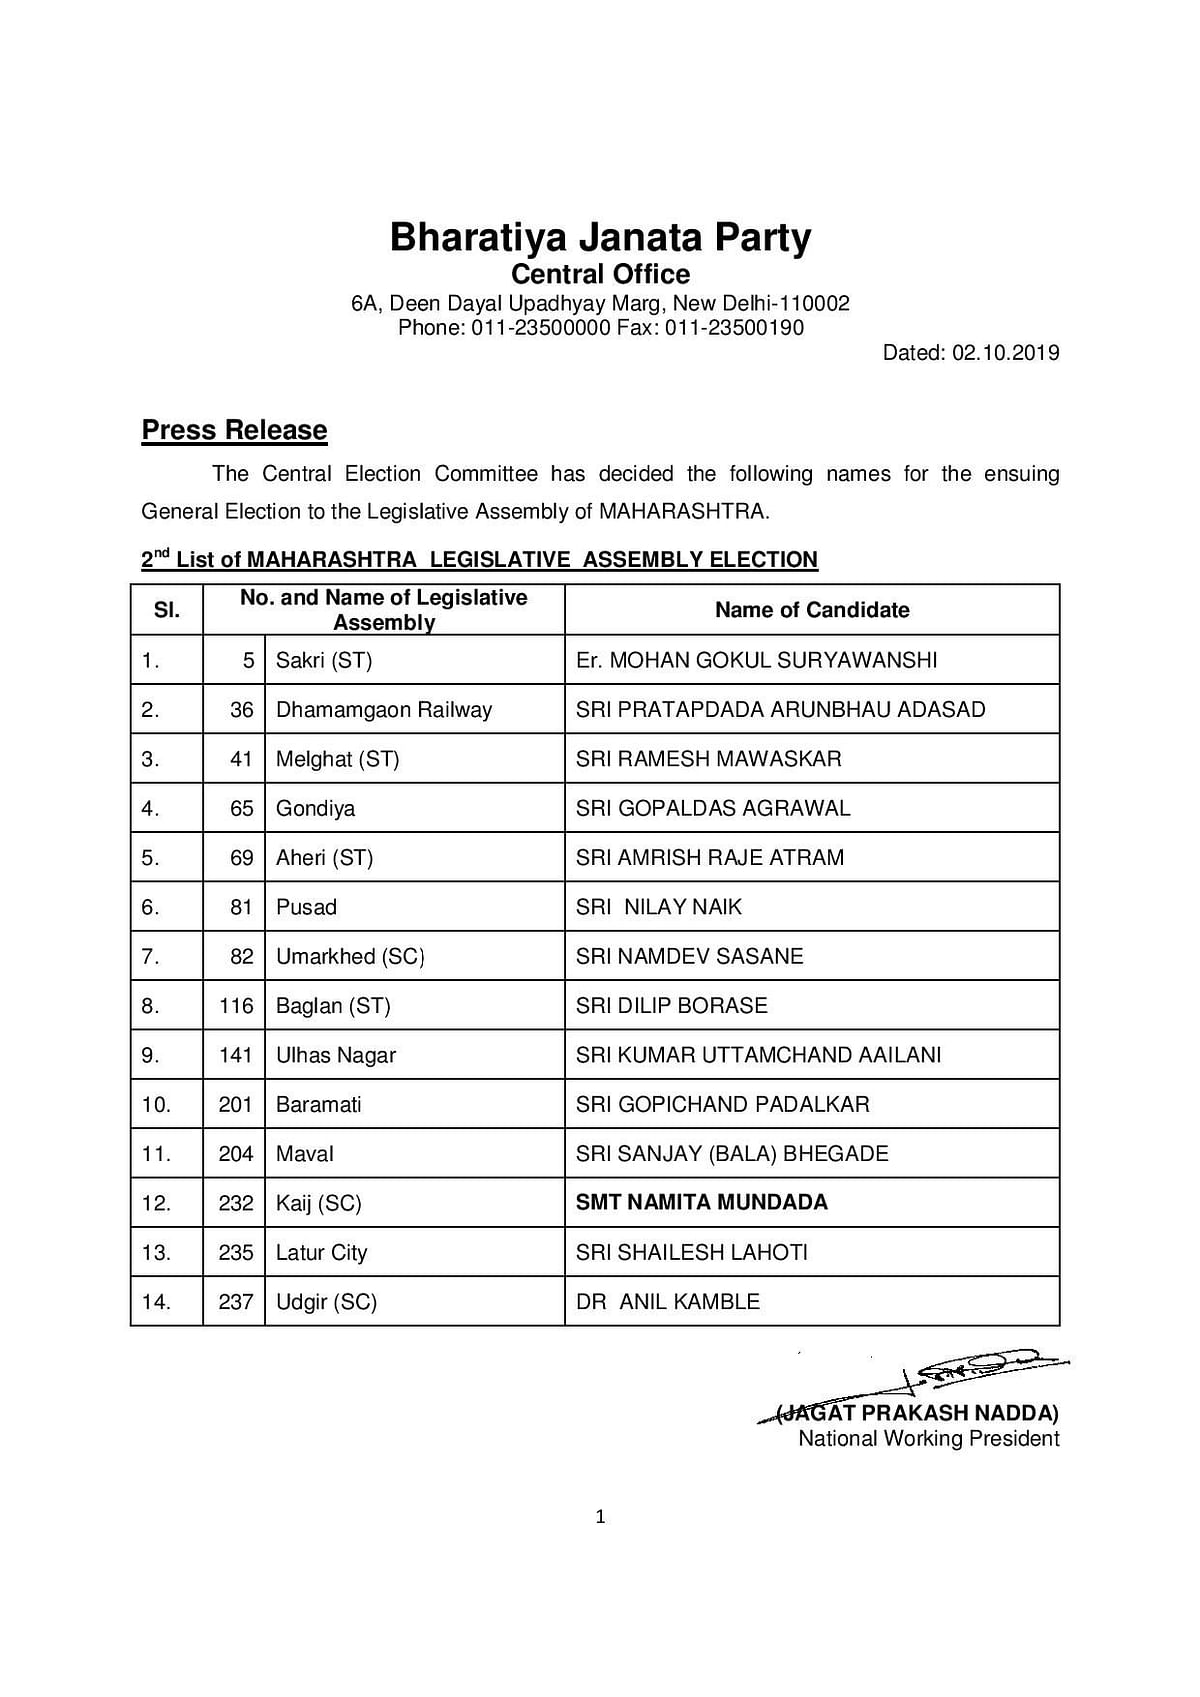 महाराष्ट्र विधानसभा चुनाव के लिए बीजेपी, कांग्रेस और एनसीपी उम्मीदवारों की लिस्ट